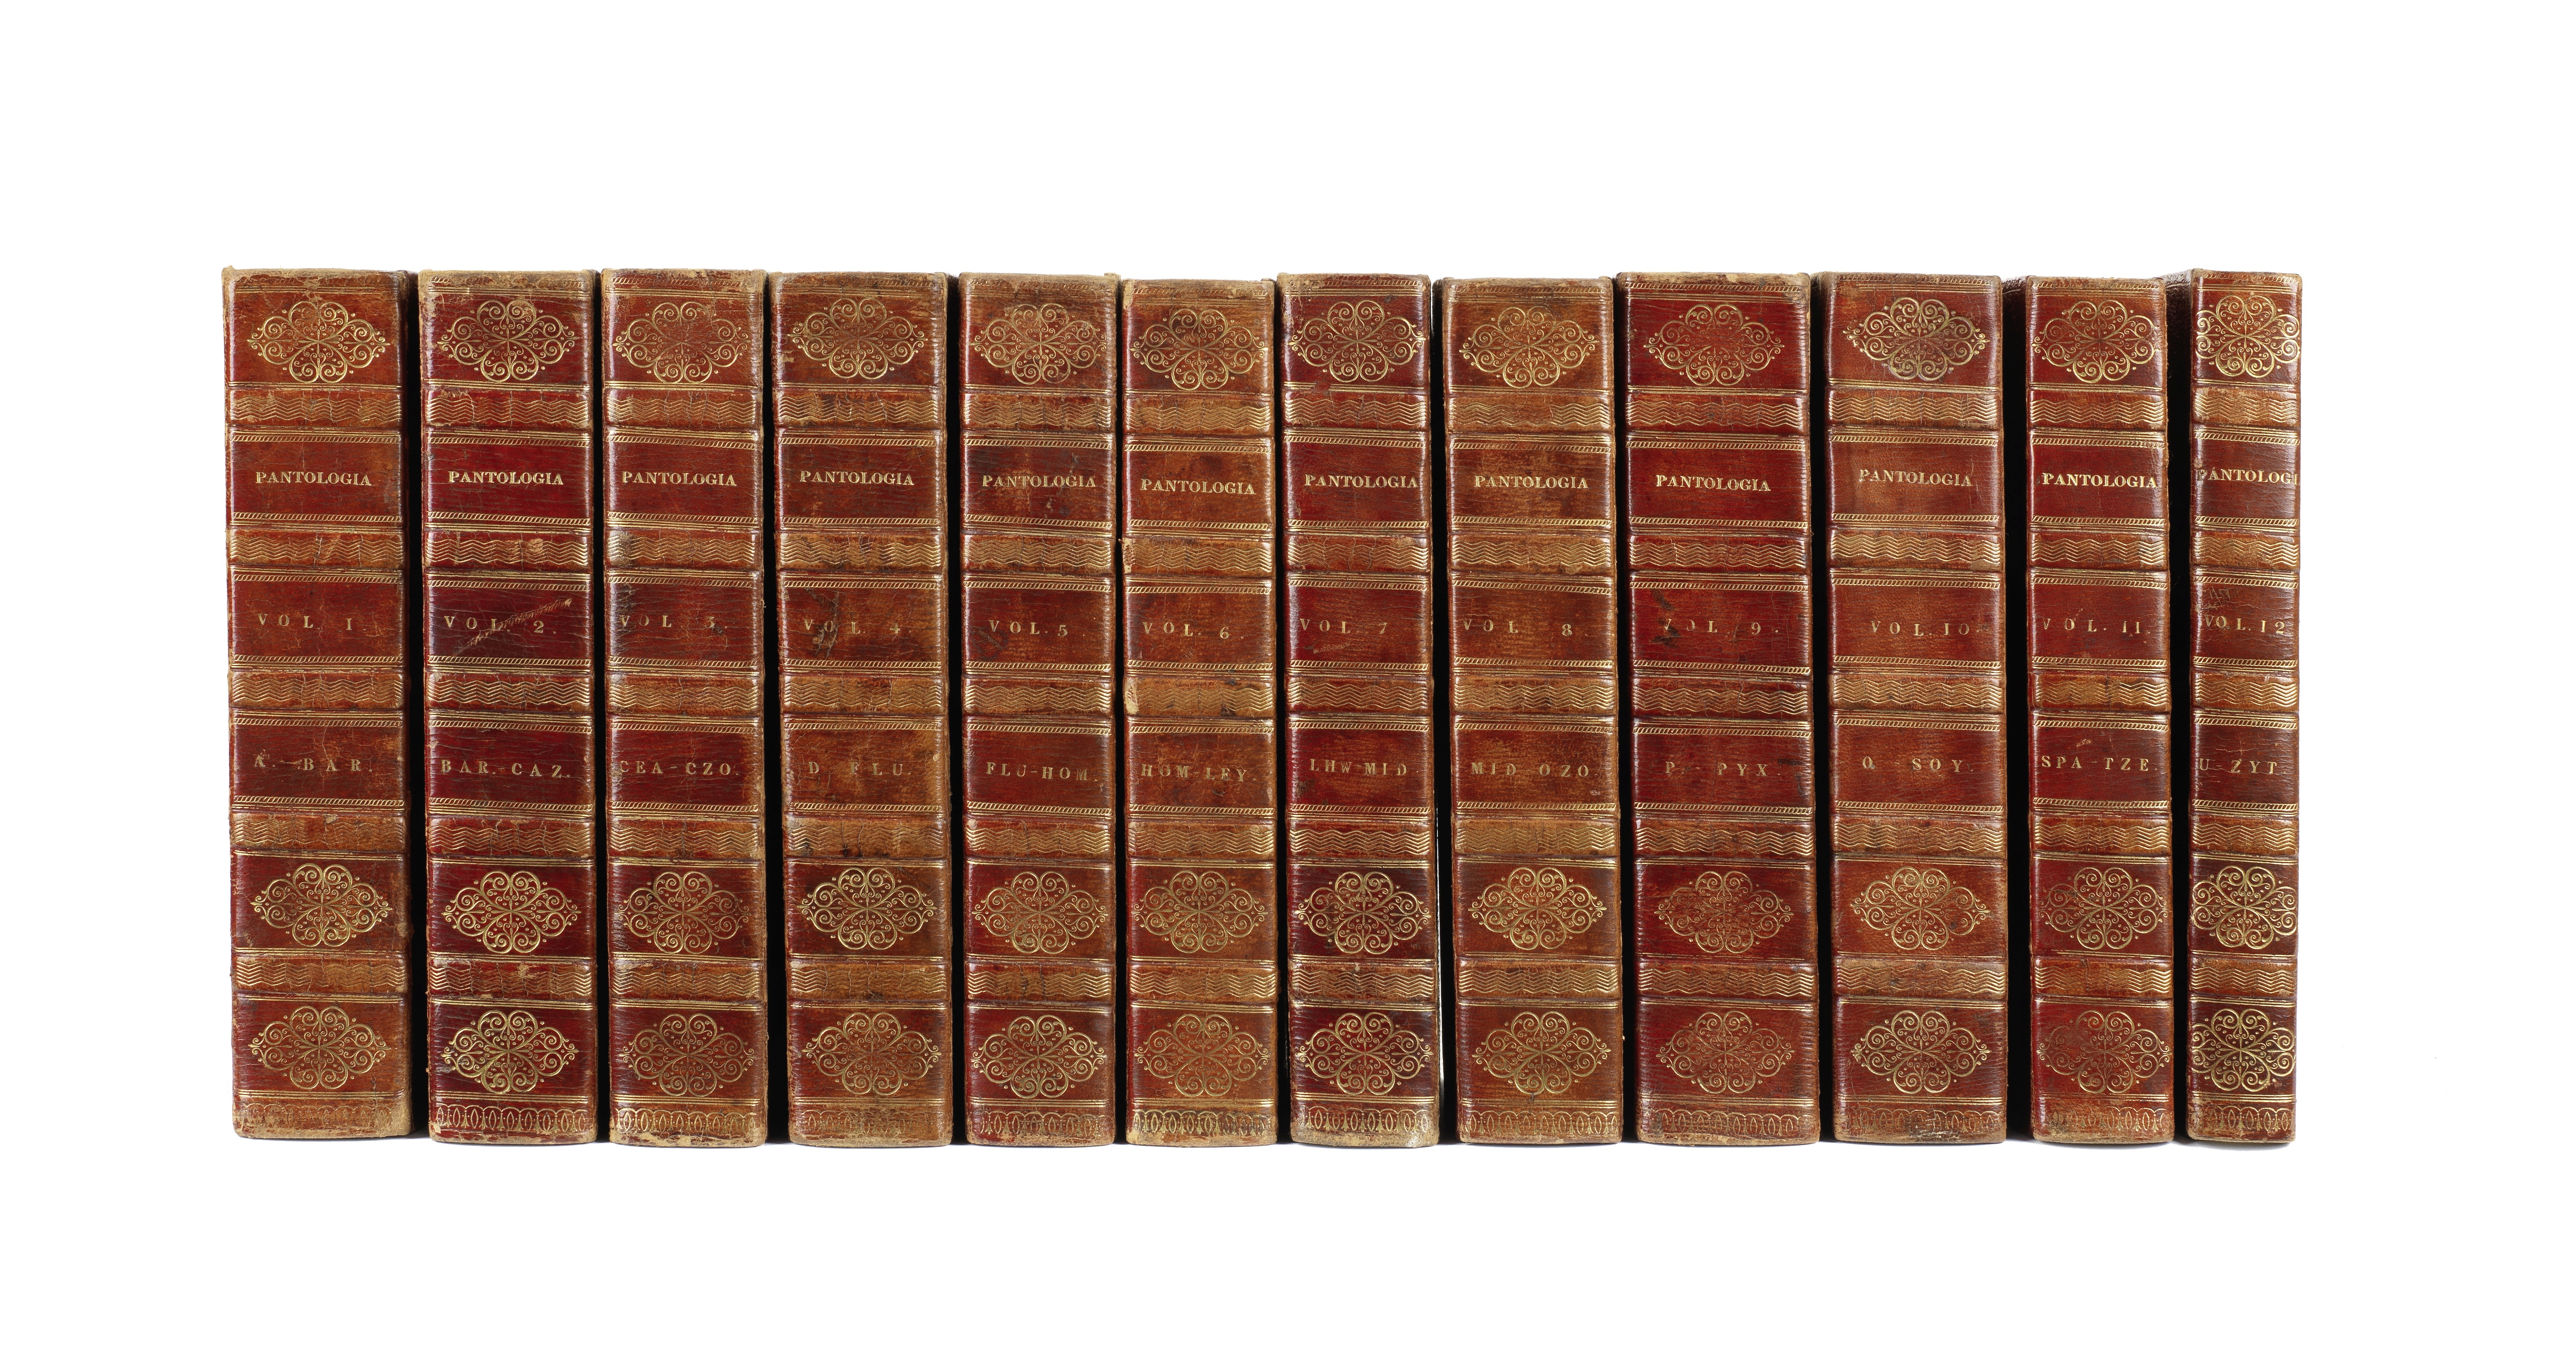 BINDINGS GOOD (JOHN MASON) Pantologia: a New Cyclopaedia, 12 vol., G. Kearsley et al., 1813